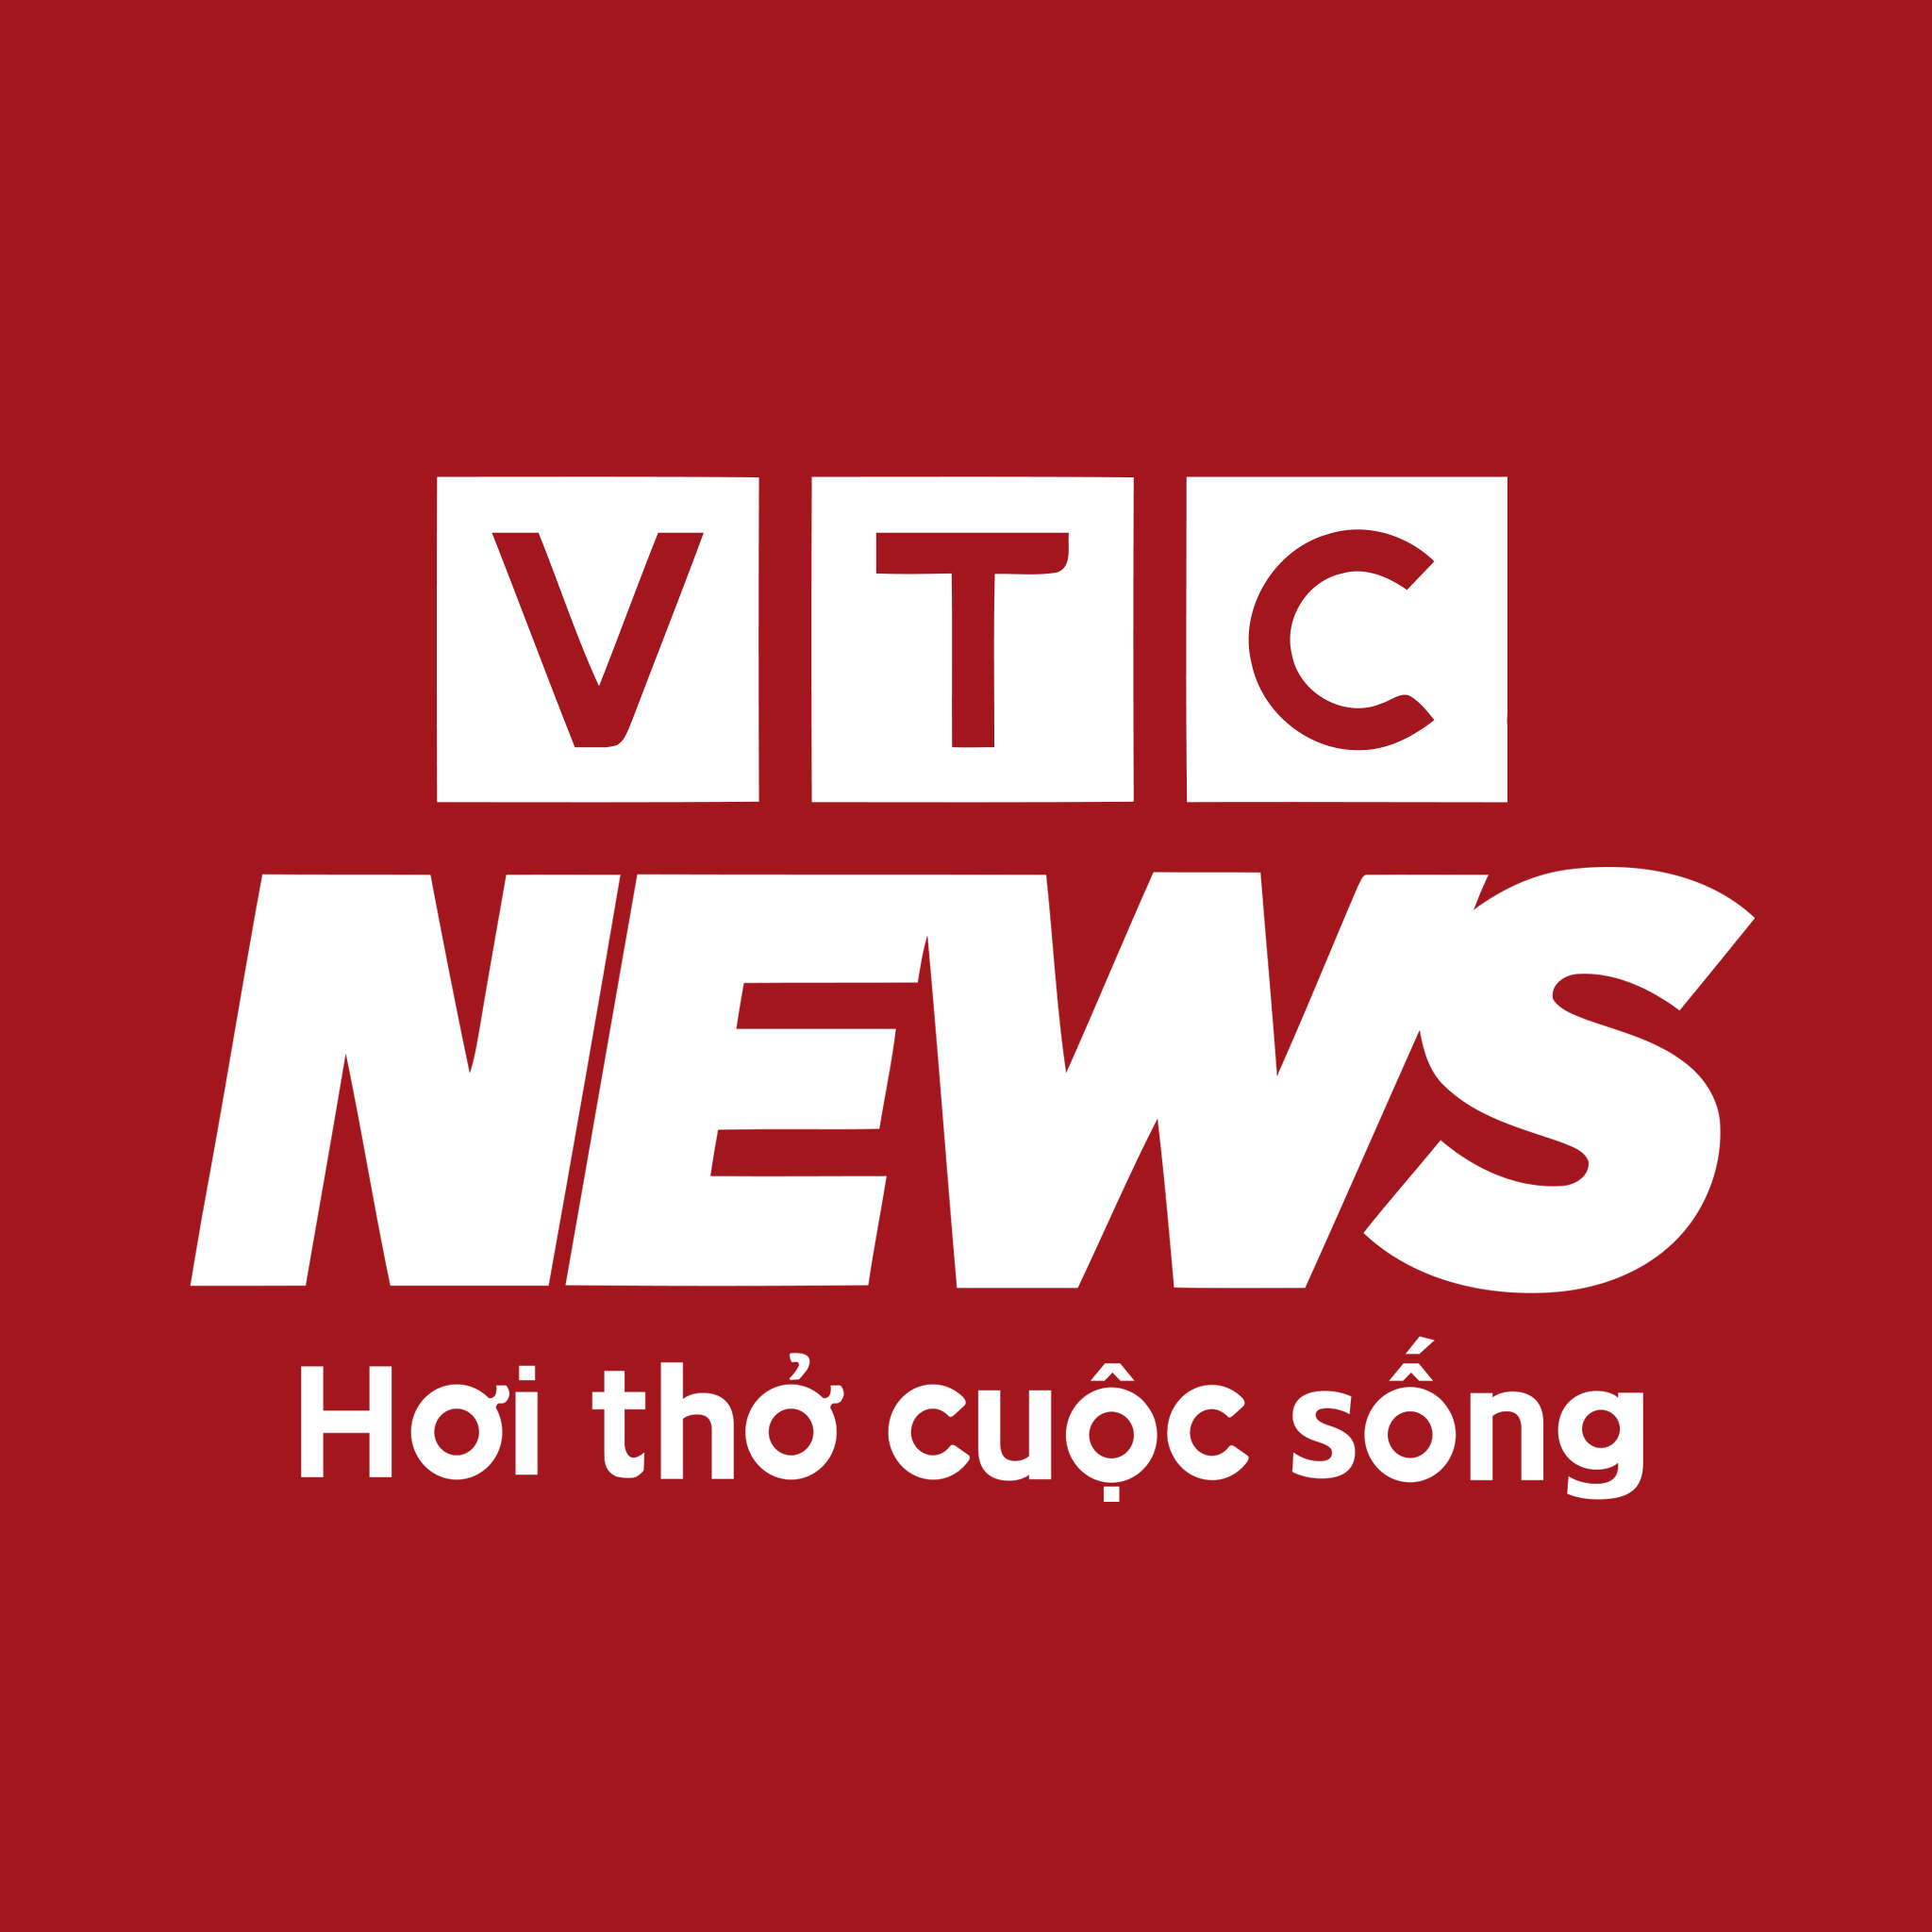 VTC News